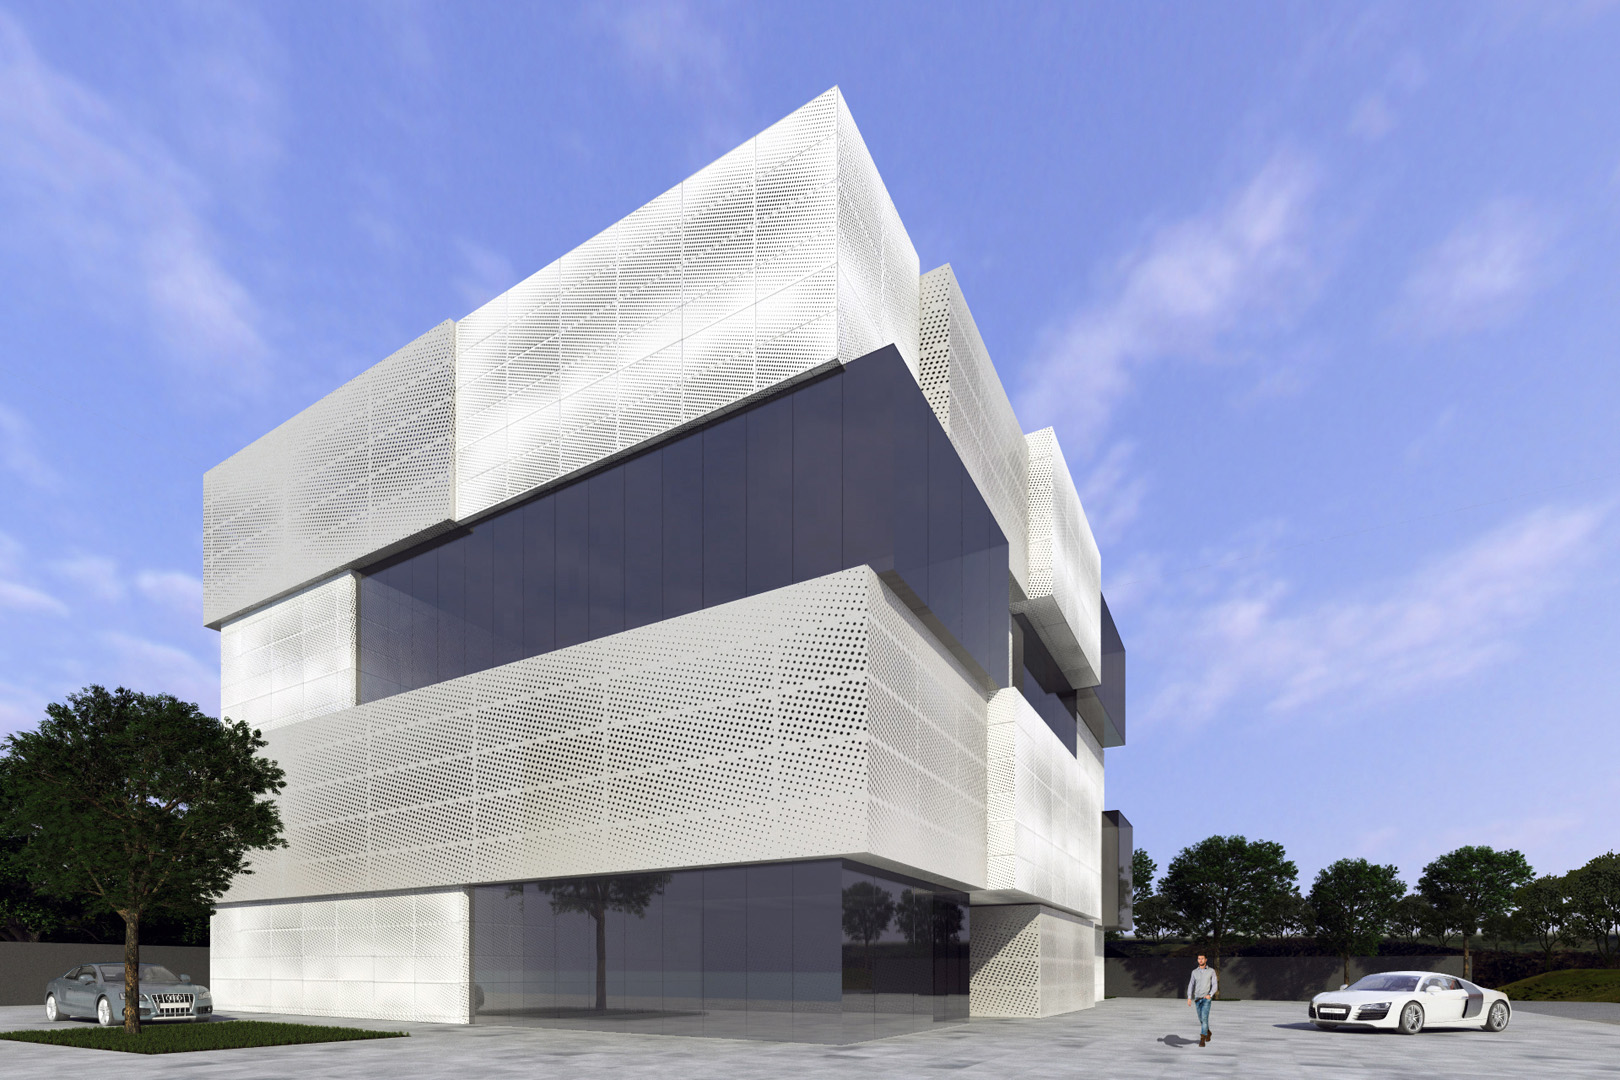 Arhitektura Budjevac – 2 Cubik